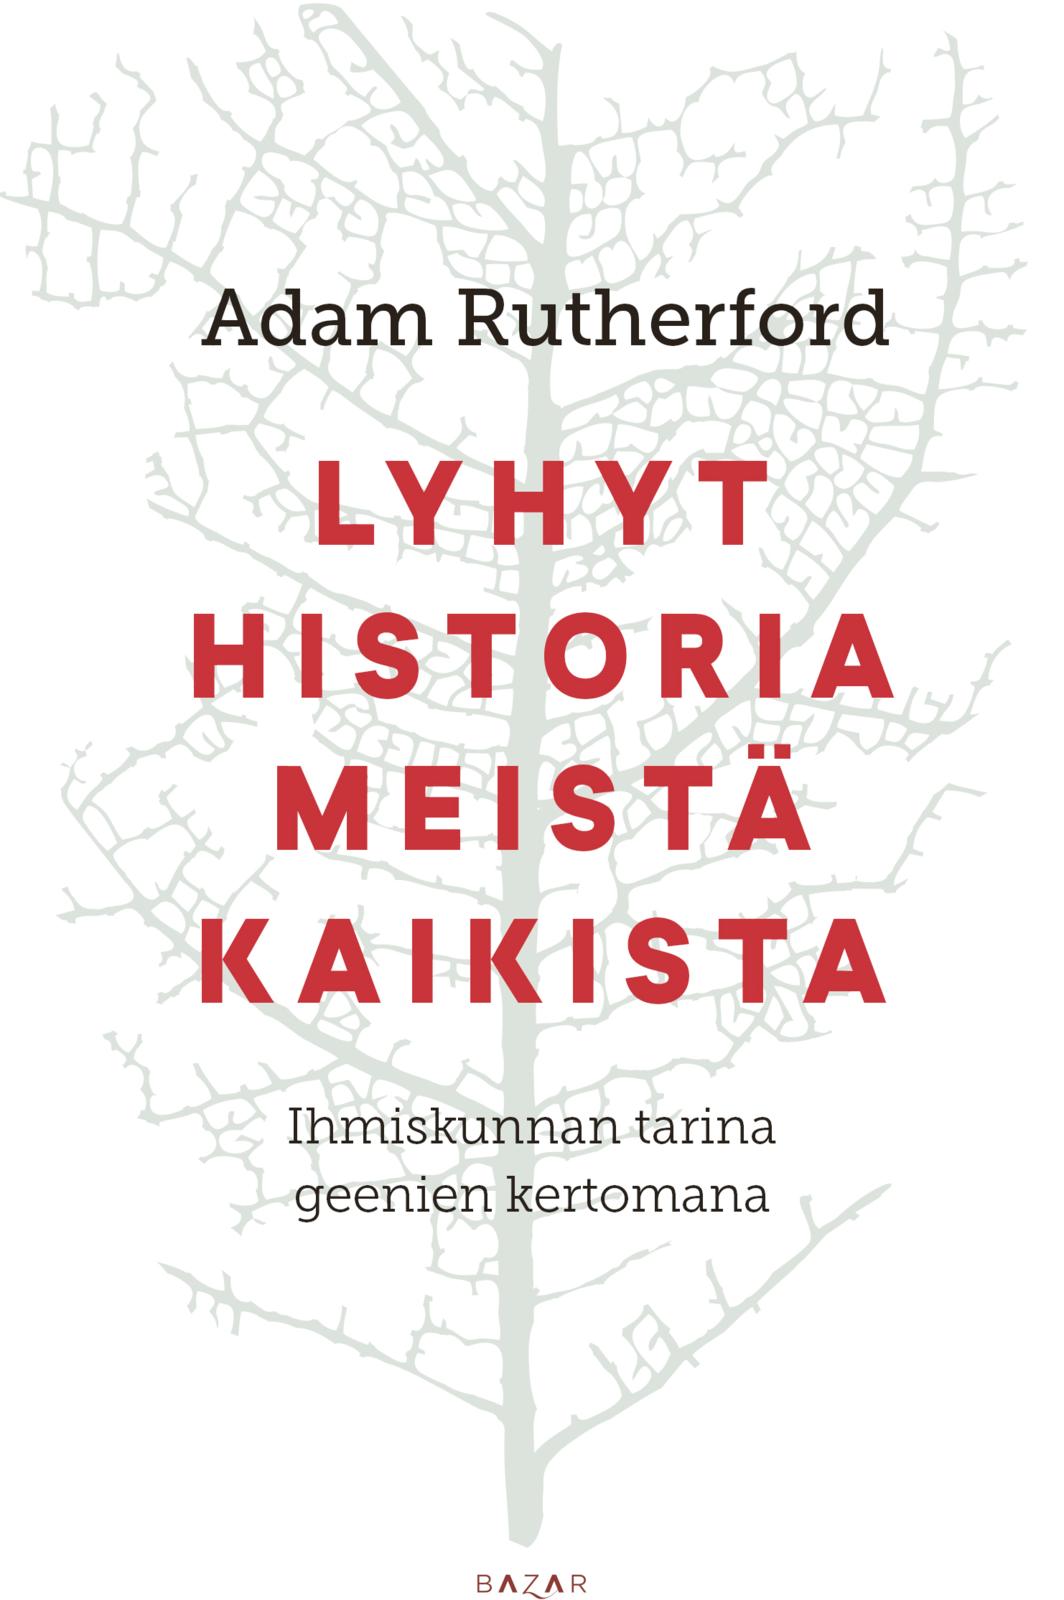 Adam Rutherford: Lyhyt historia meistä kaikista (Hardcover, Finnish language, 2019, Bazar)